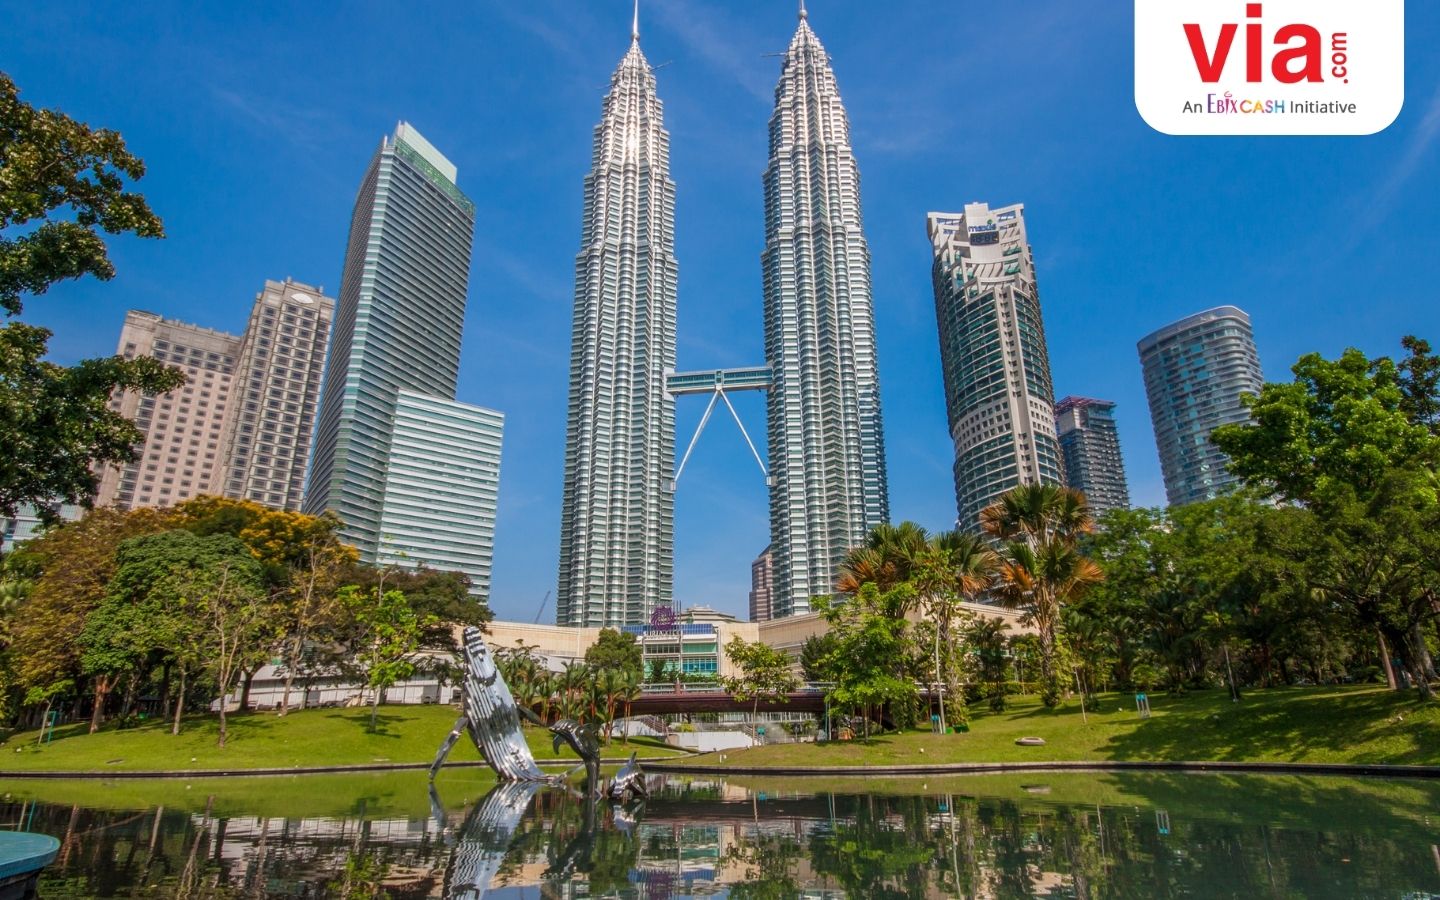 Kuala Lumpur, Menjelajahi Kota Multikultural Malaysia bersama TransNusa